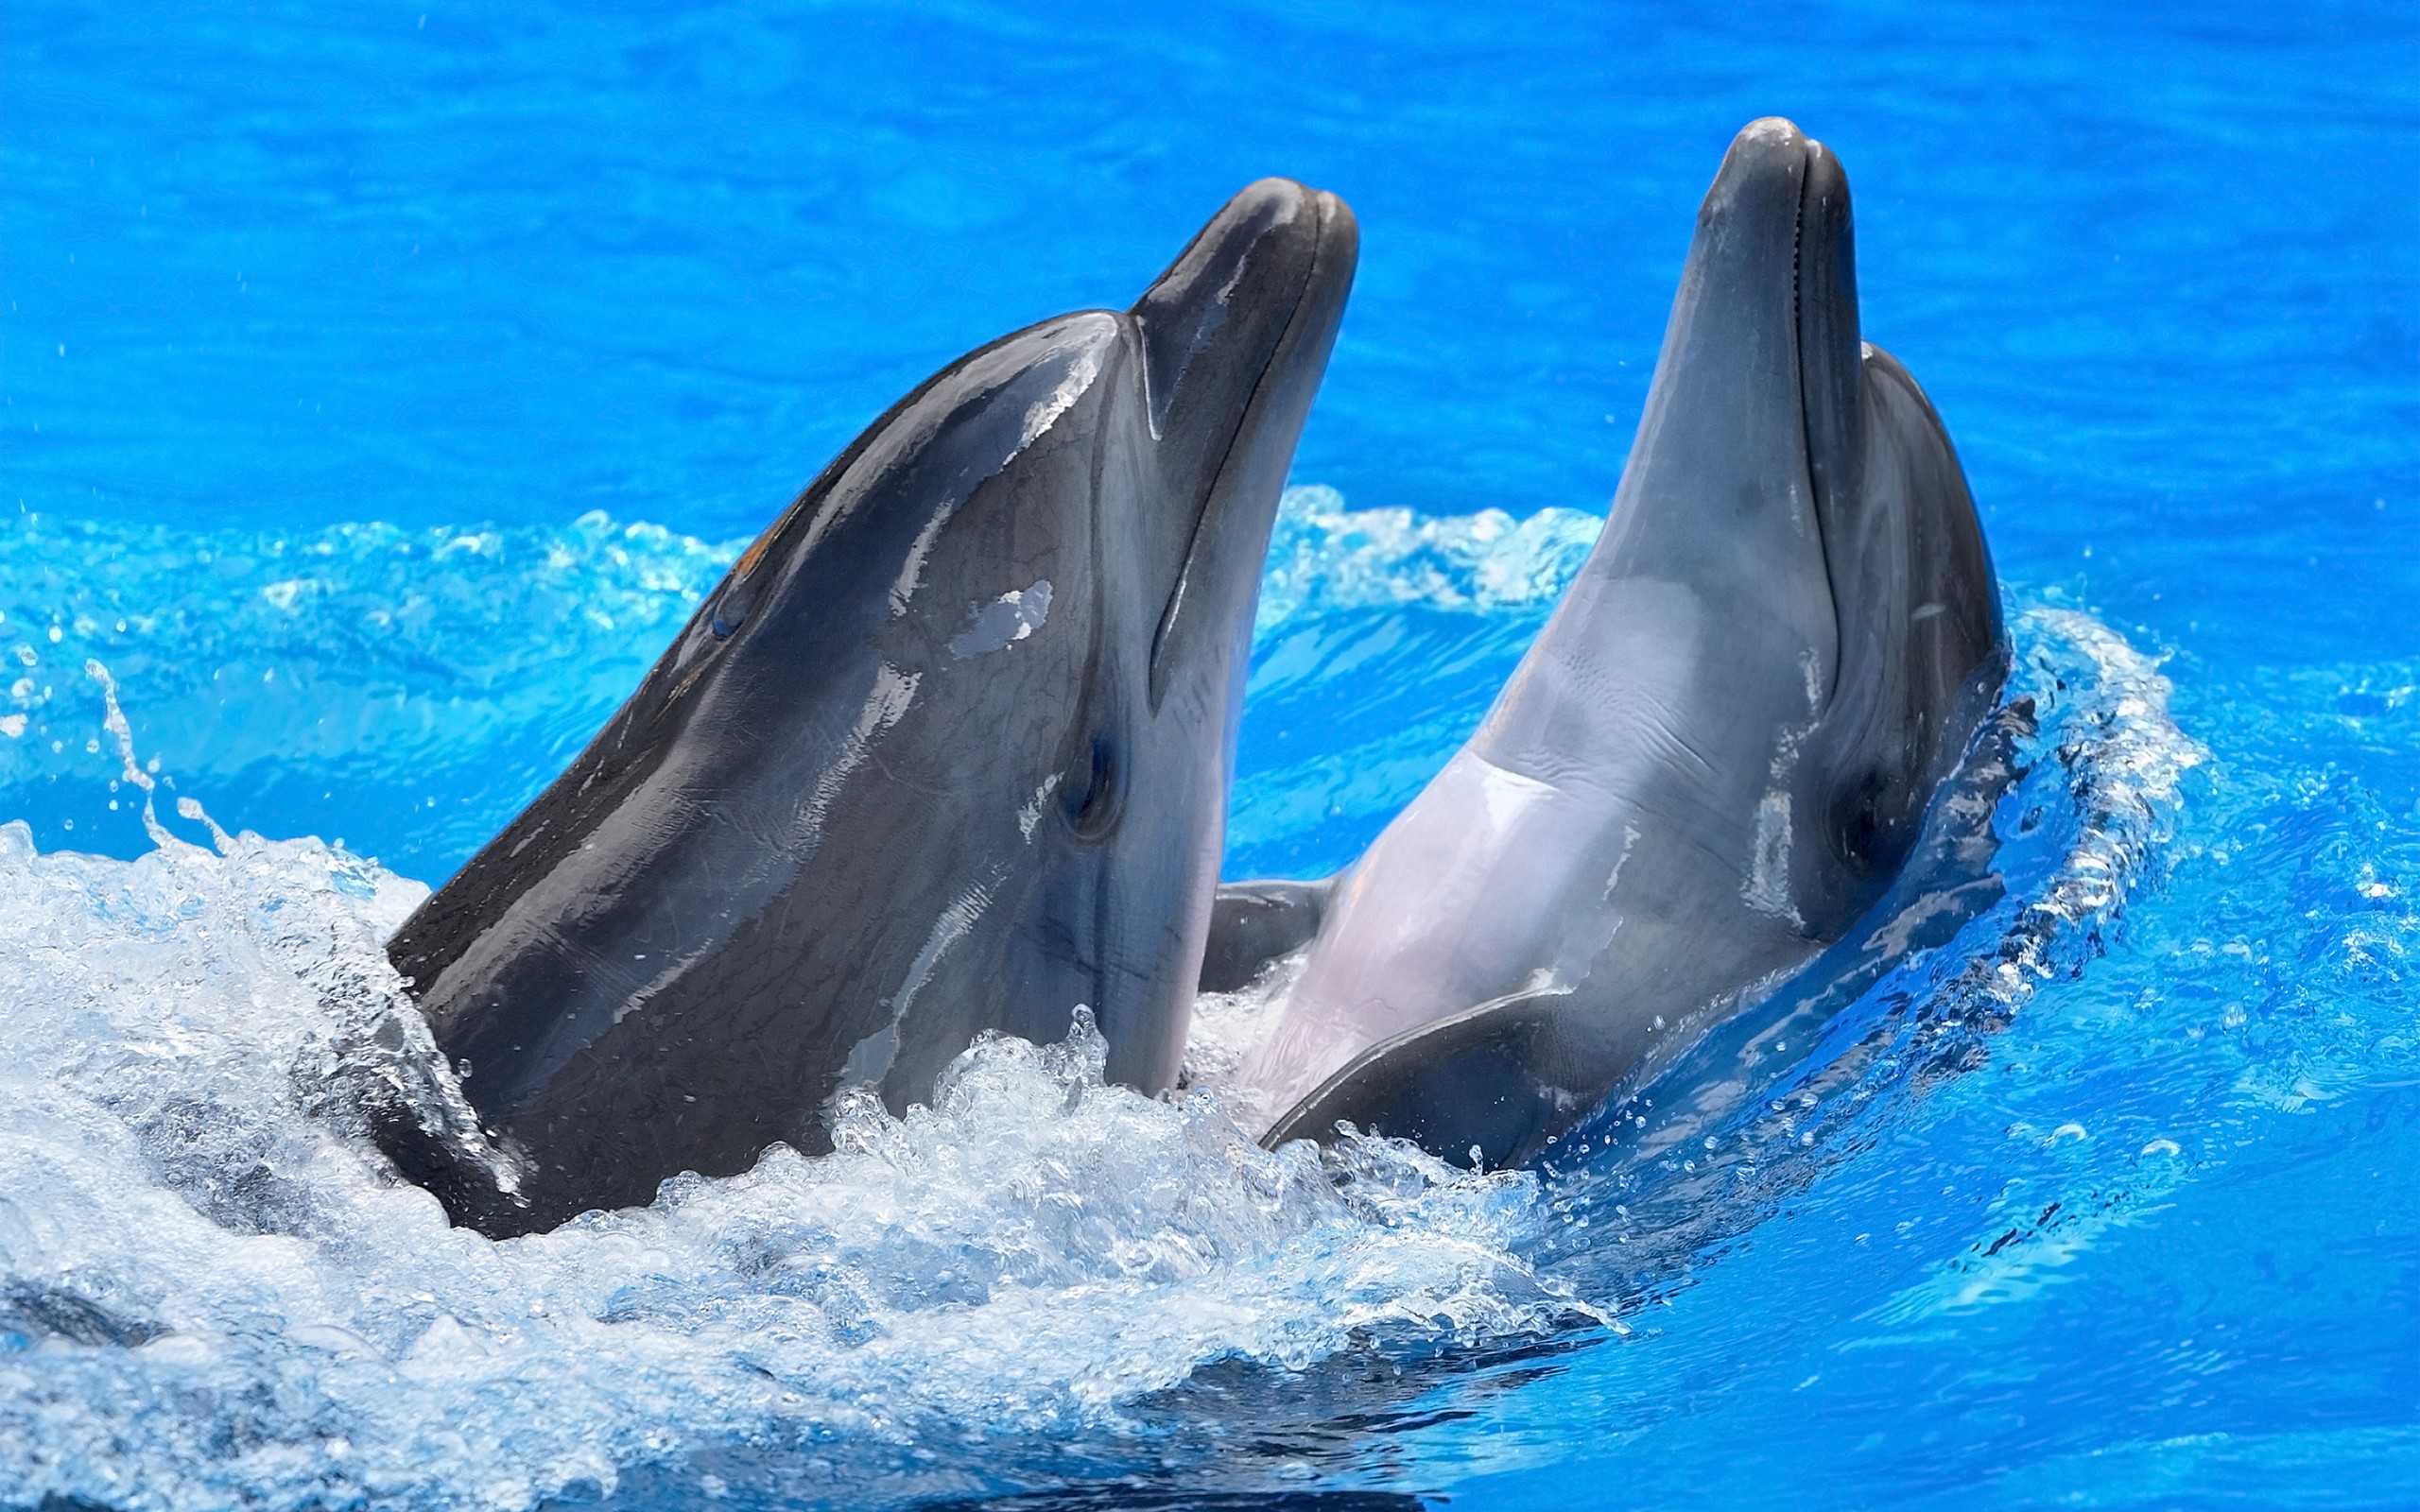 دانلود والپیپر از دلفین ها Dolphins Wallpaper با کیفیت بالا